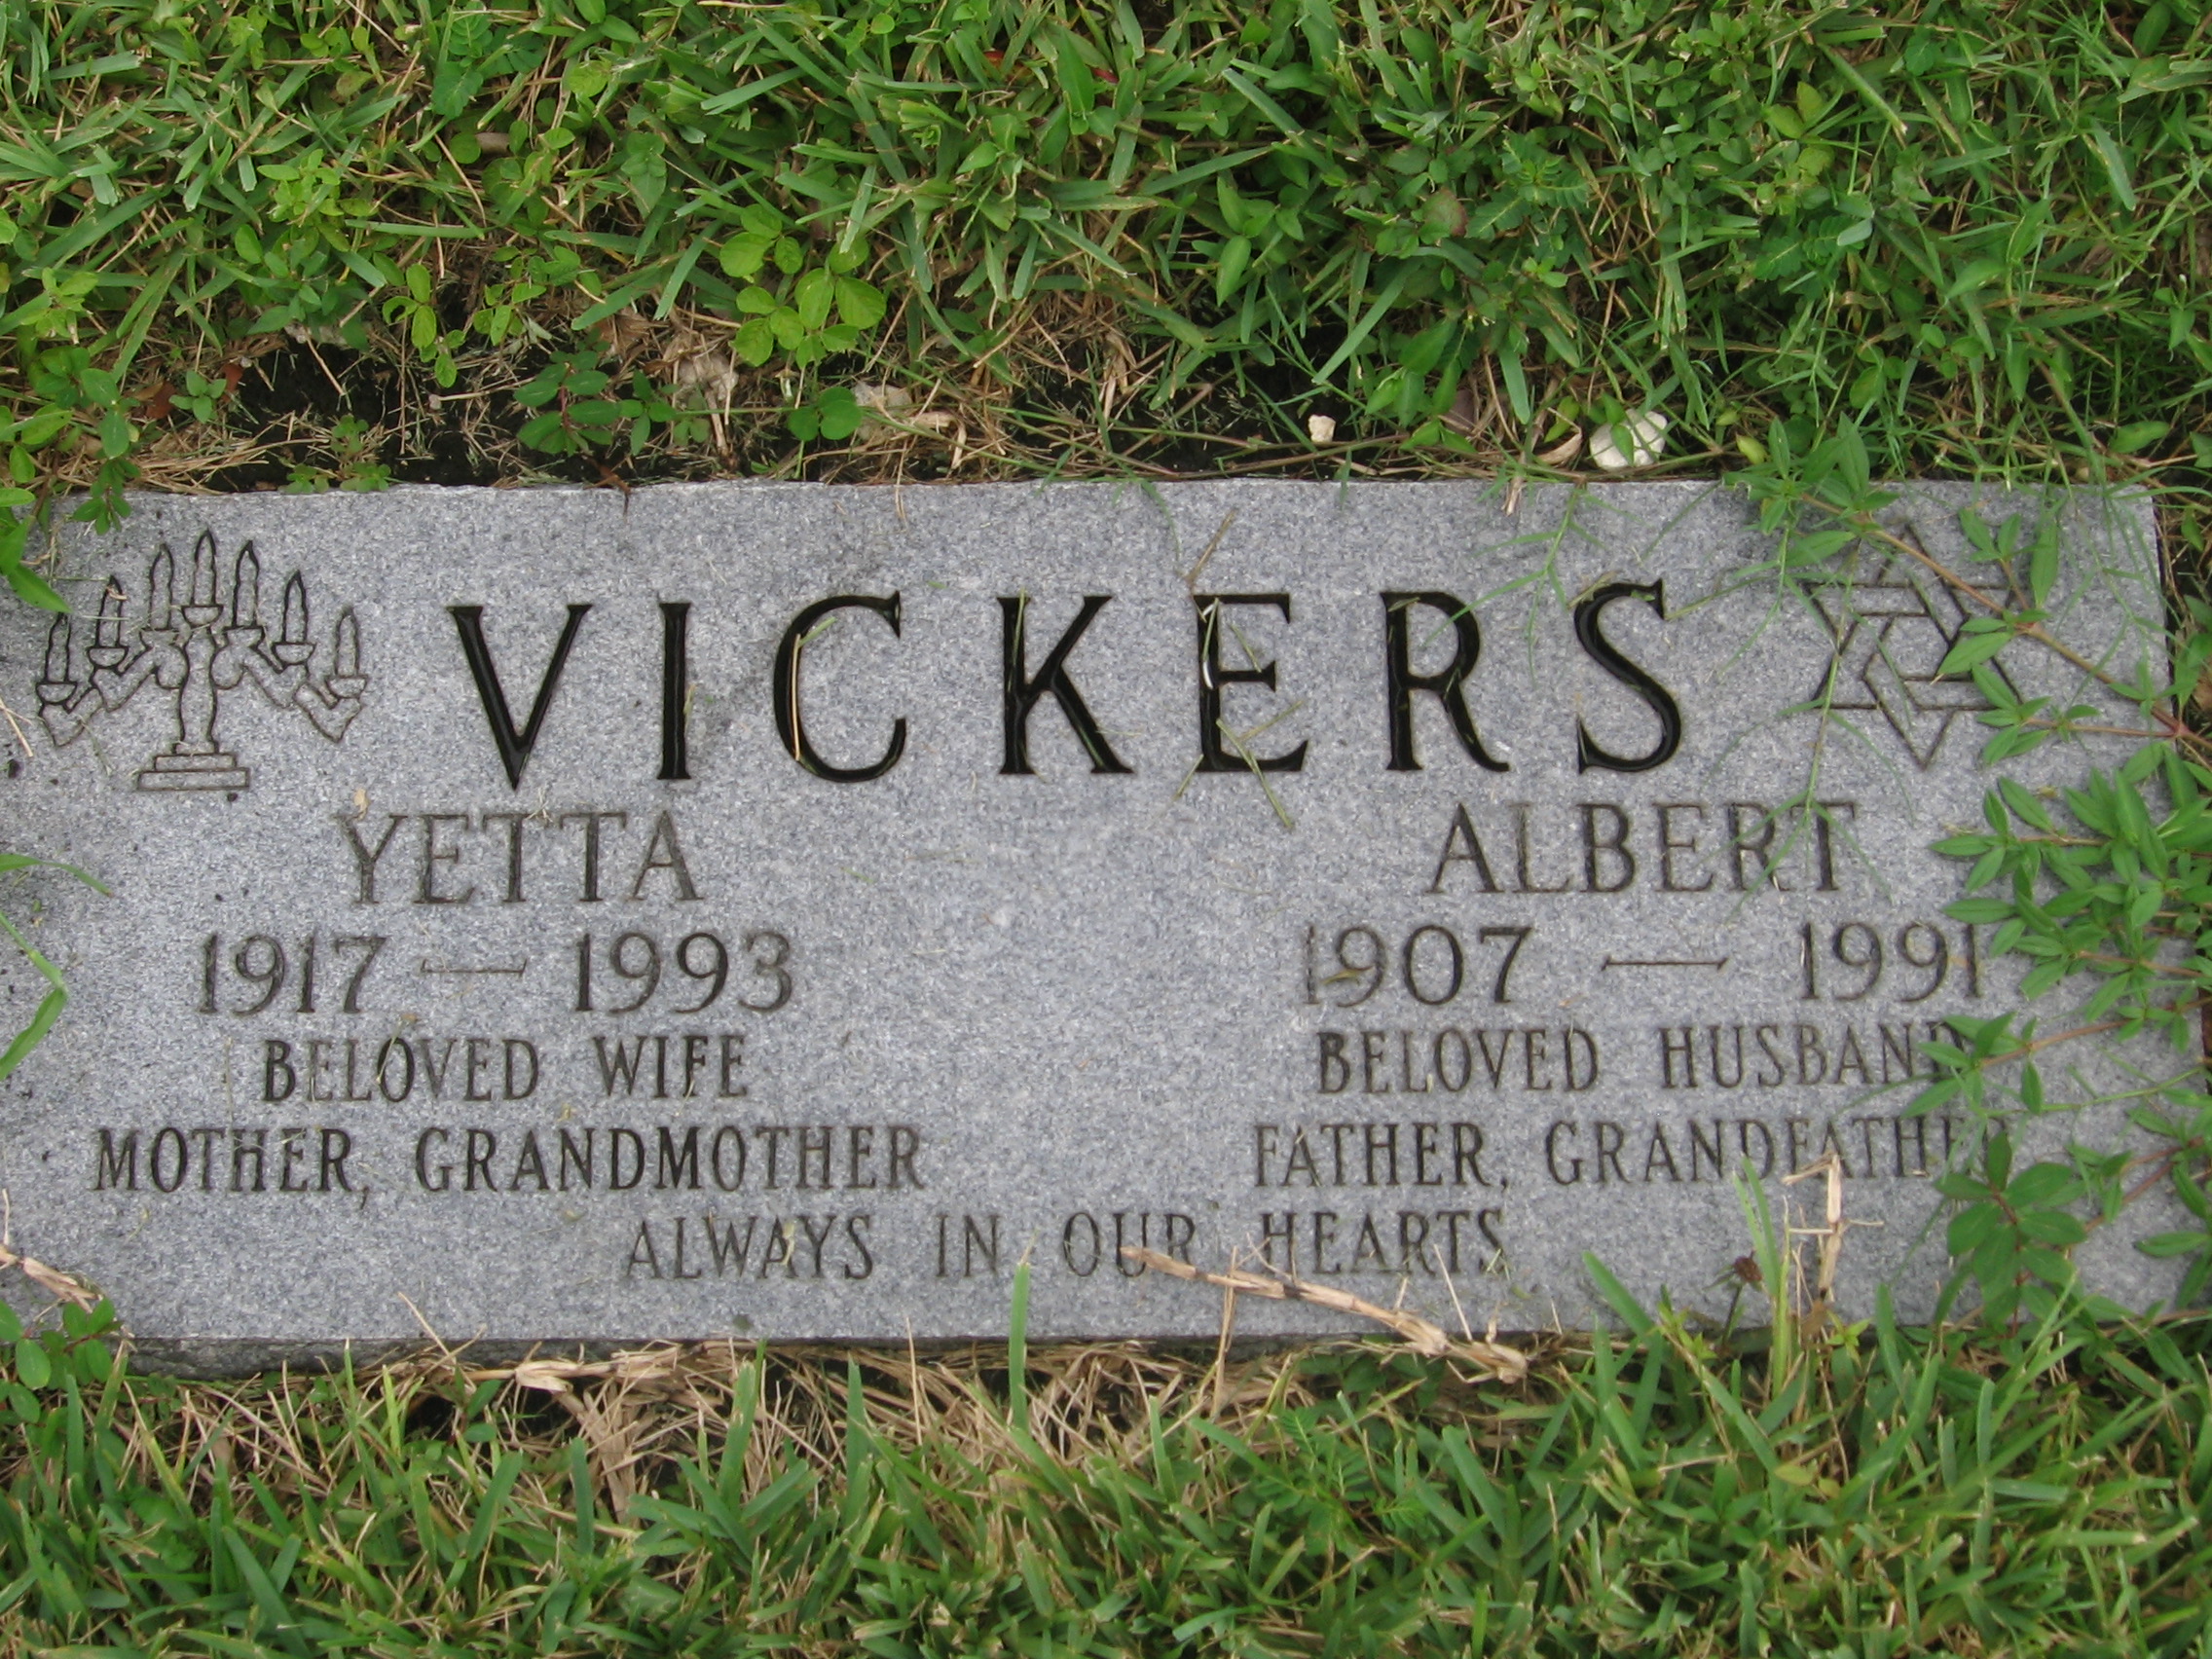 Albert Vickers